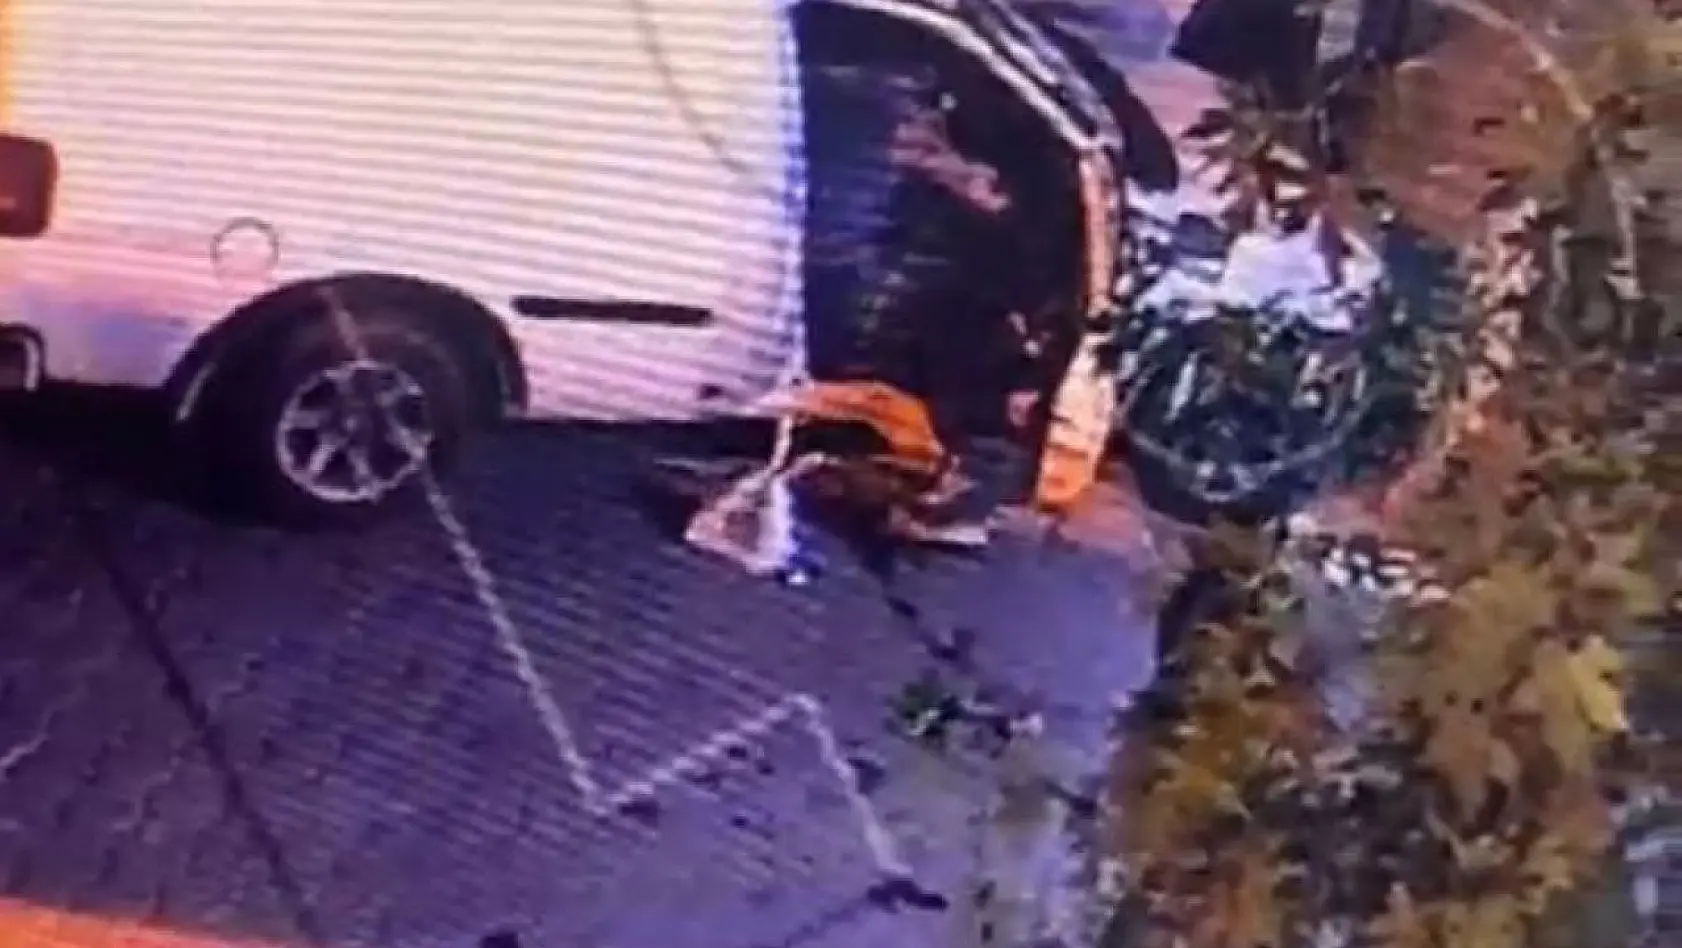 Fethiye'de park halindeki araçtan hırsızlık yapan şahıs tutuklandı